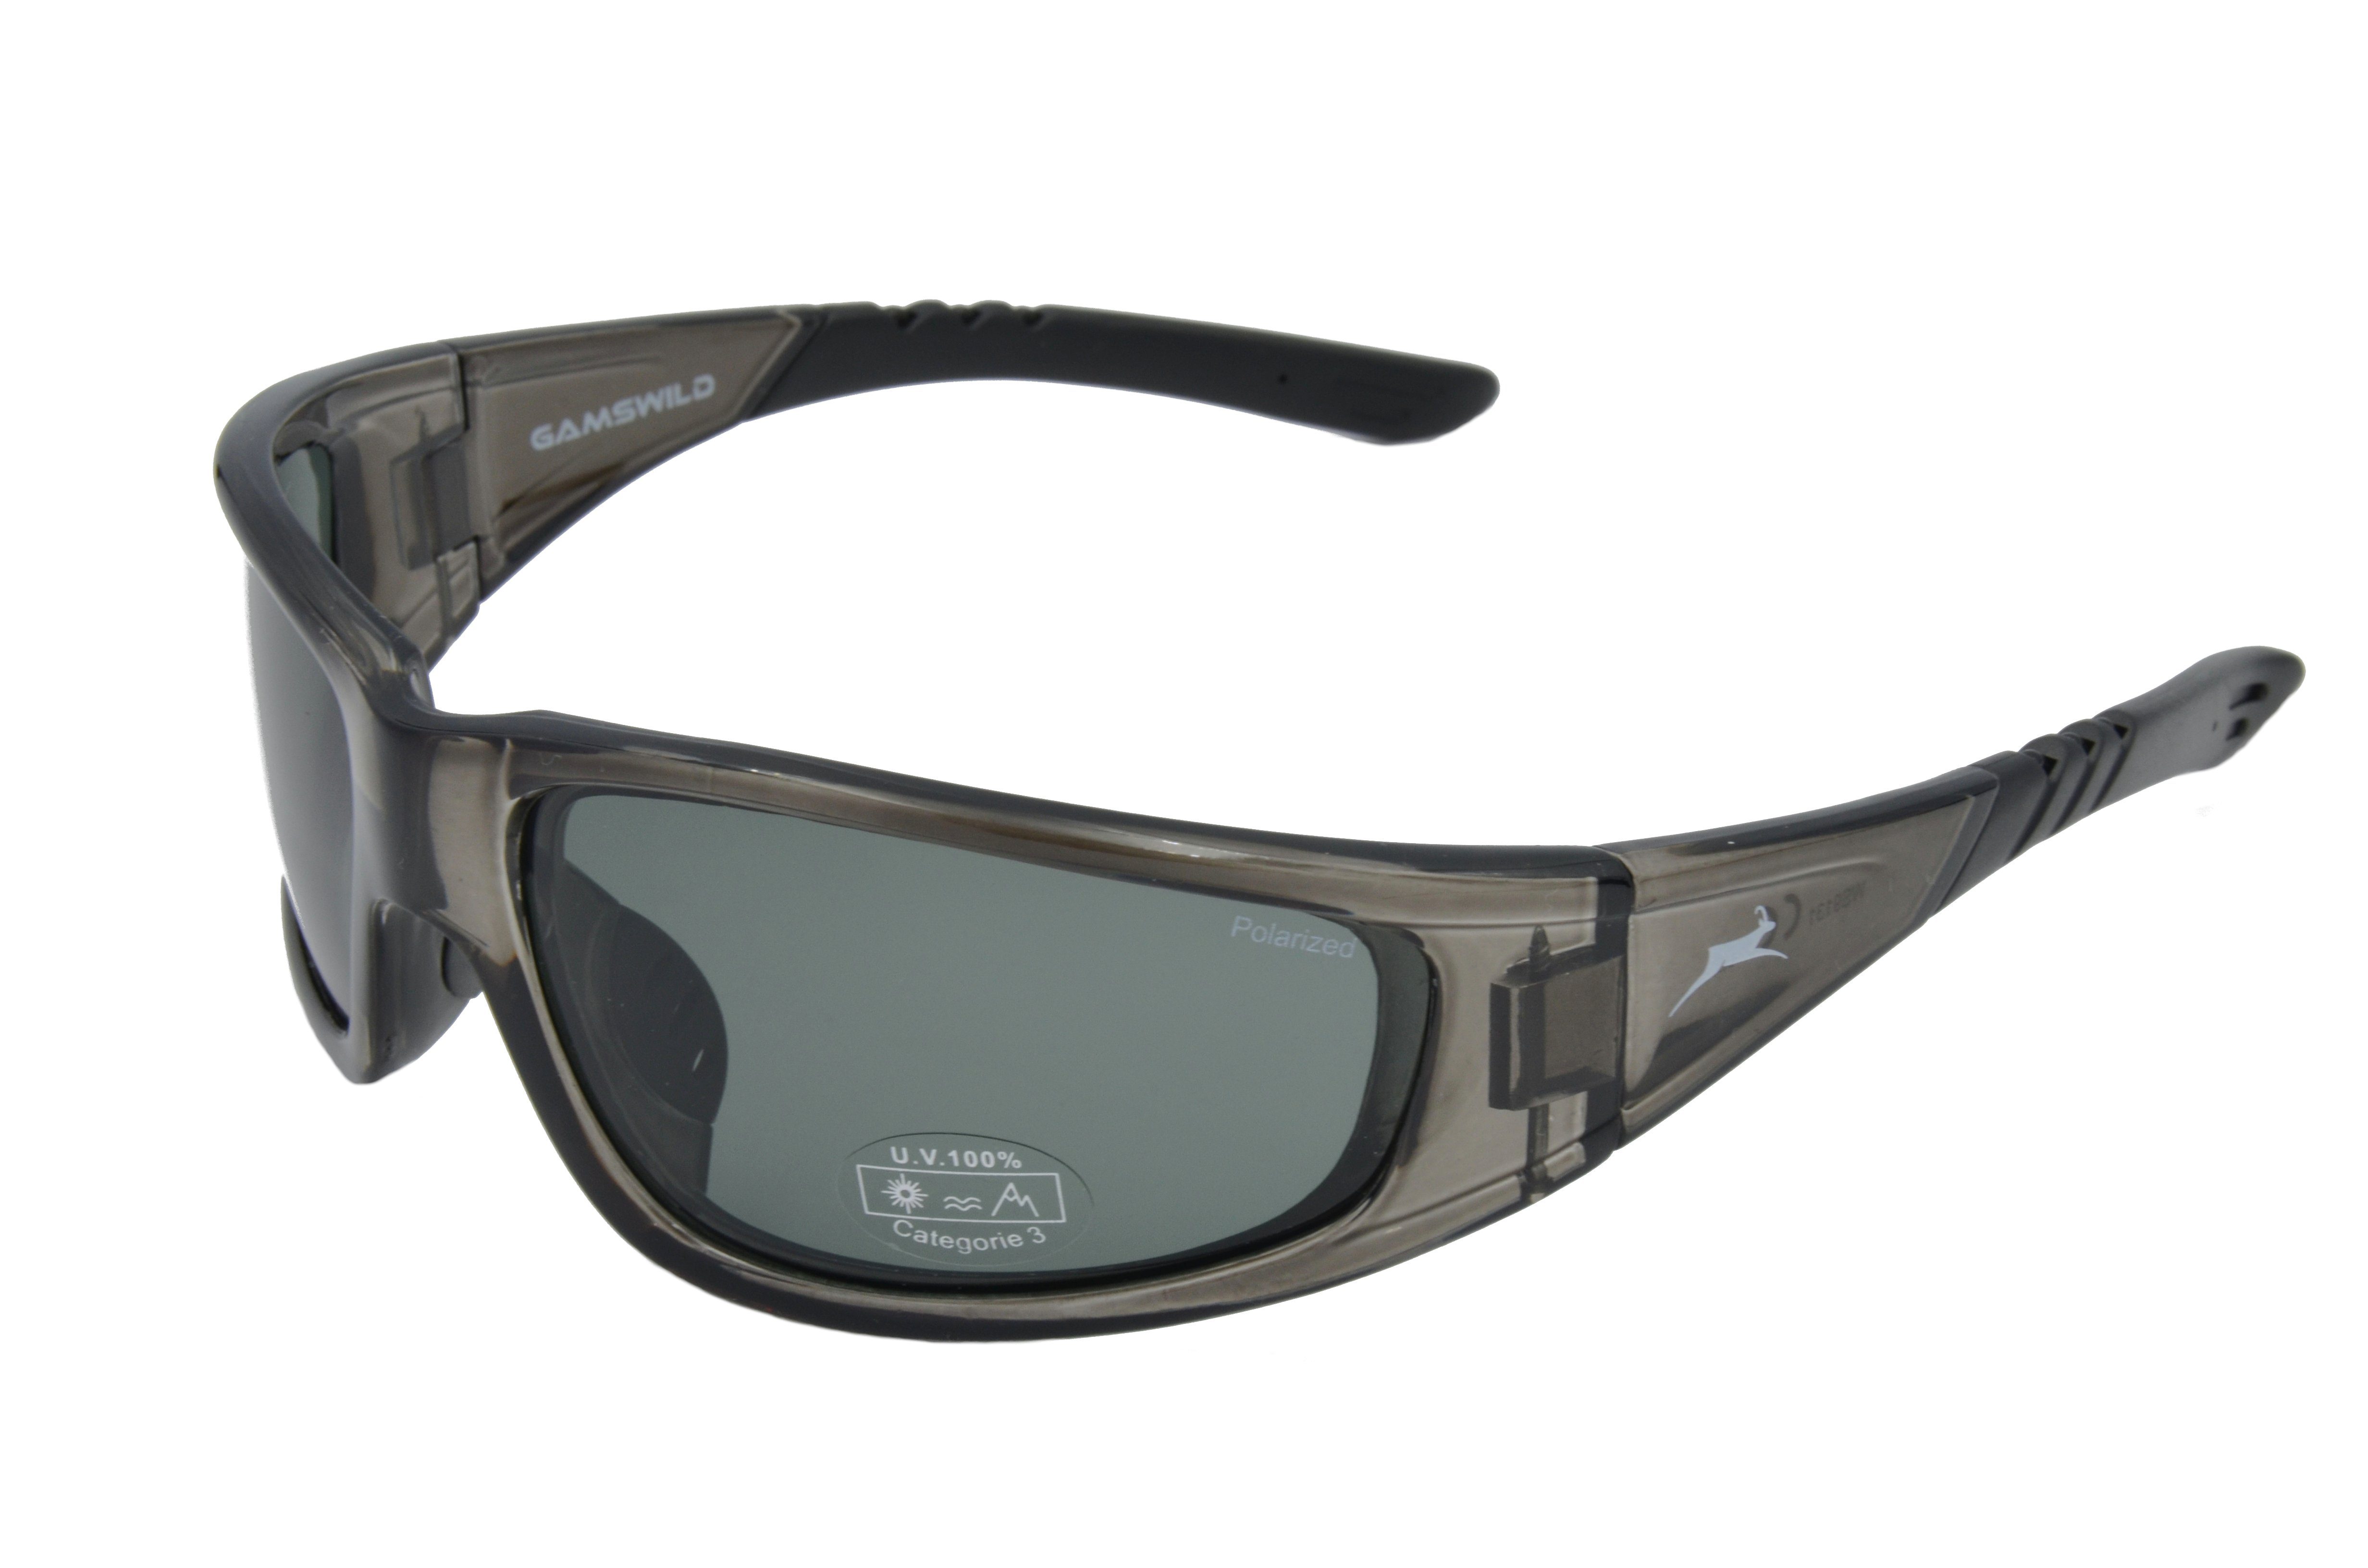 Gamswild Sportbrille WS9131 polarisiert Unisex, Damen Sonnenbrille braun, grau-transparent, Skibrille Fahrradbrille Herren